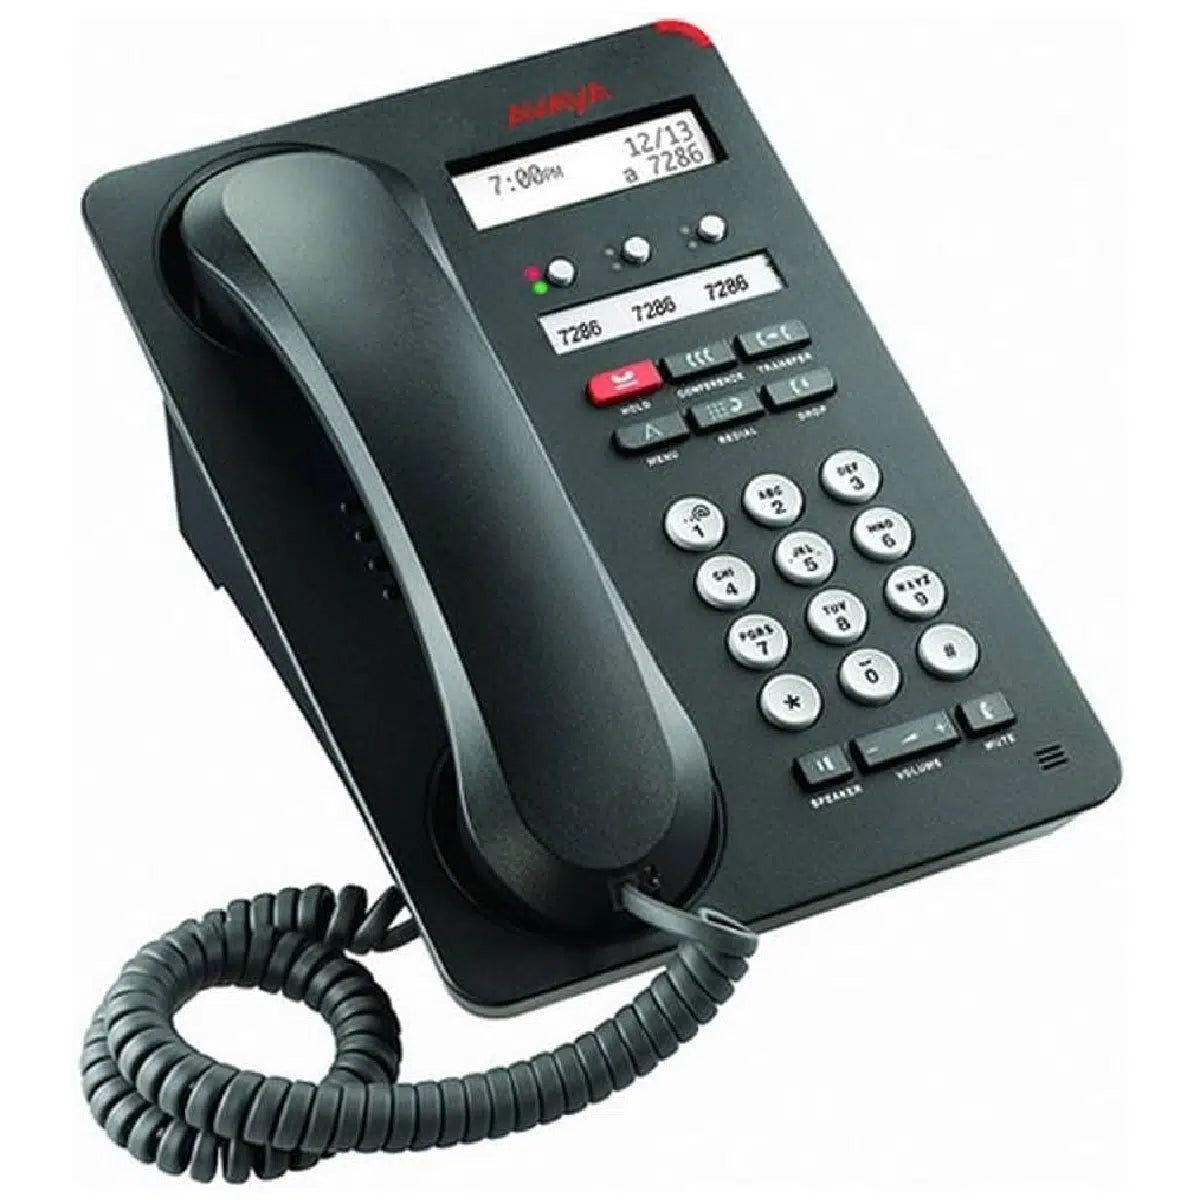 Téléphone de bureau numérique Avaya 1403 (remis à neuf)